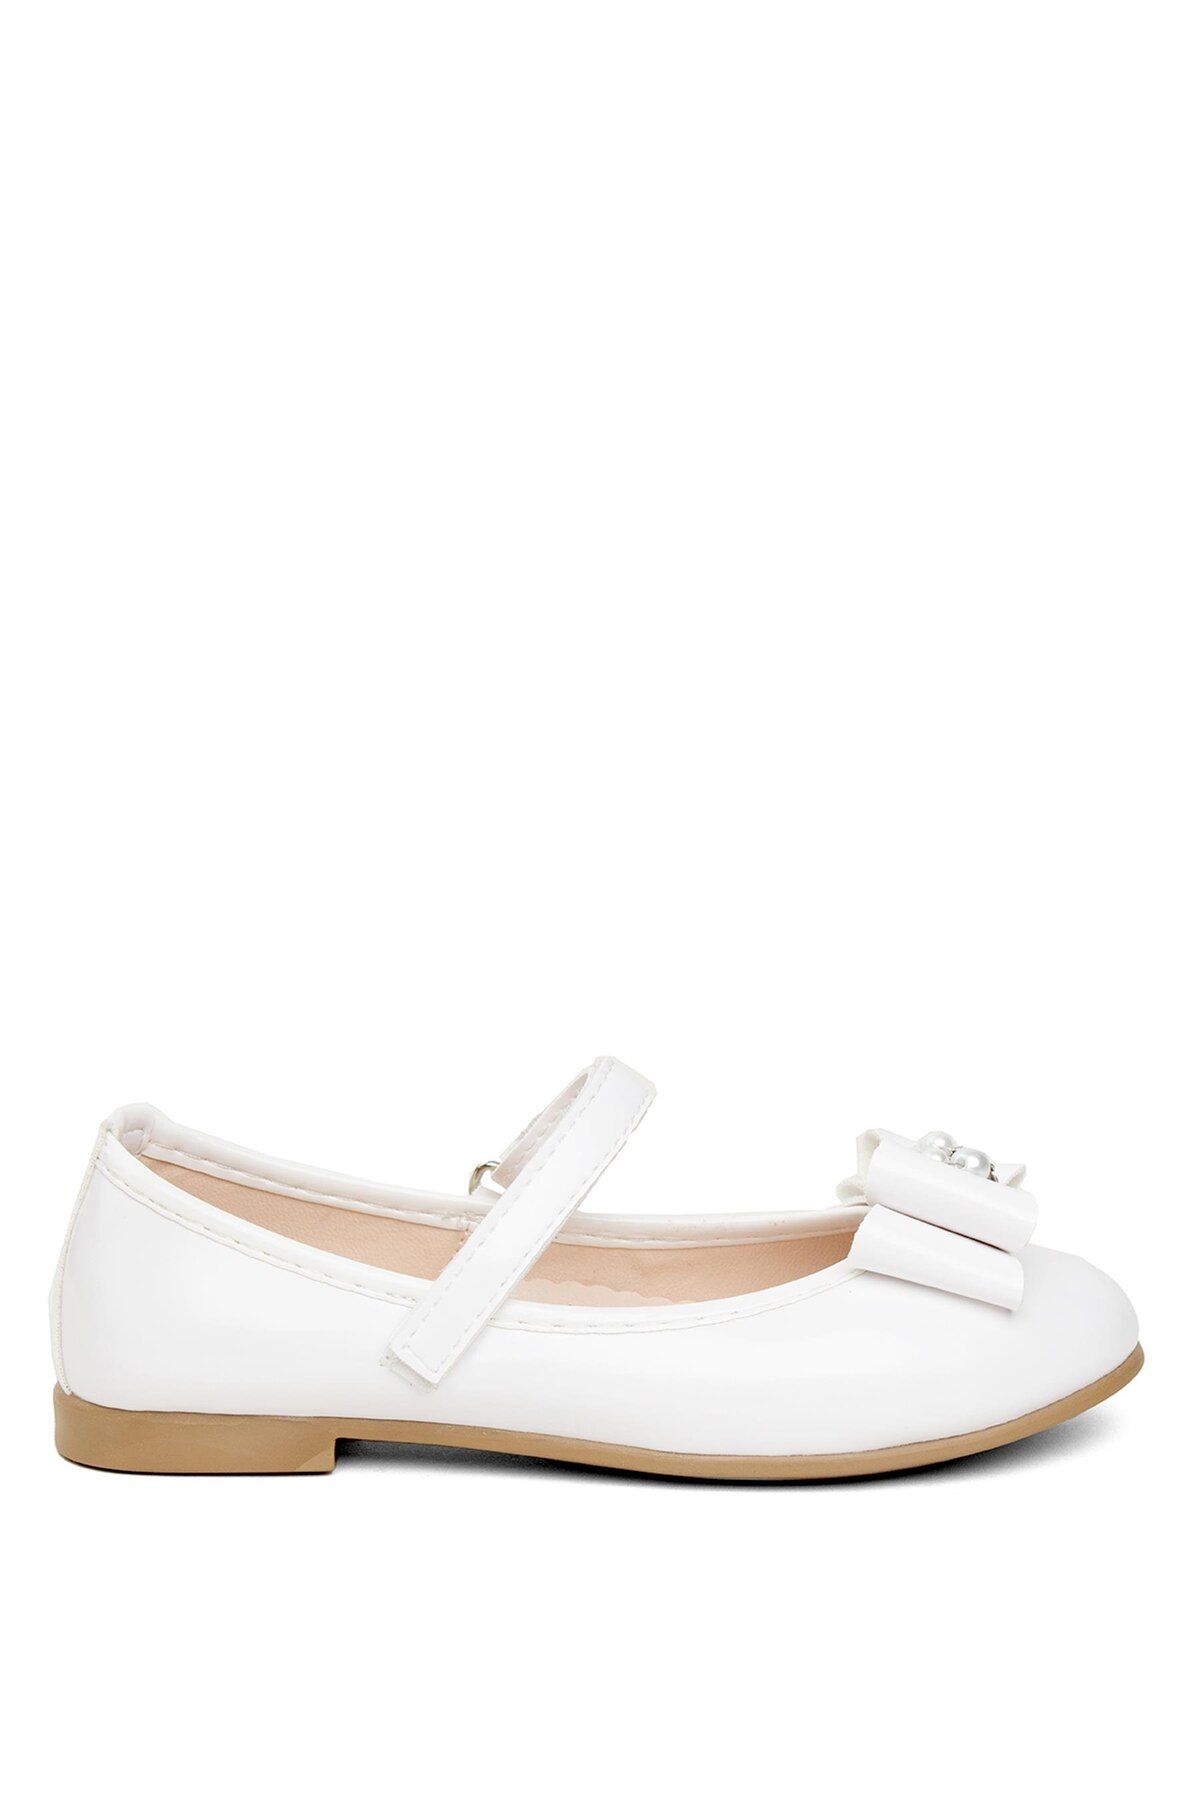 Minican HY ZN F 9030 Filet Kız Çocuk Casual Ayakkabı Beyaz